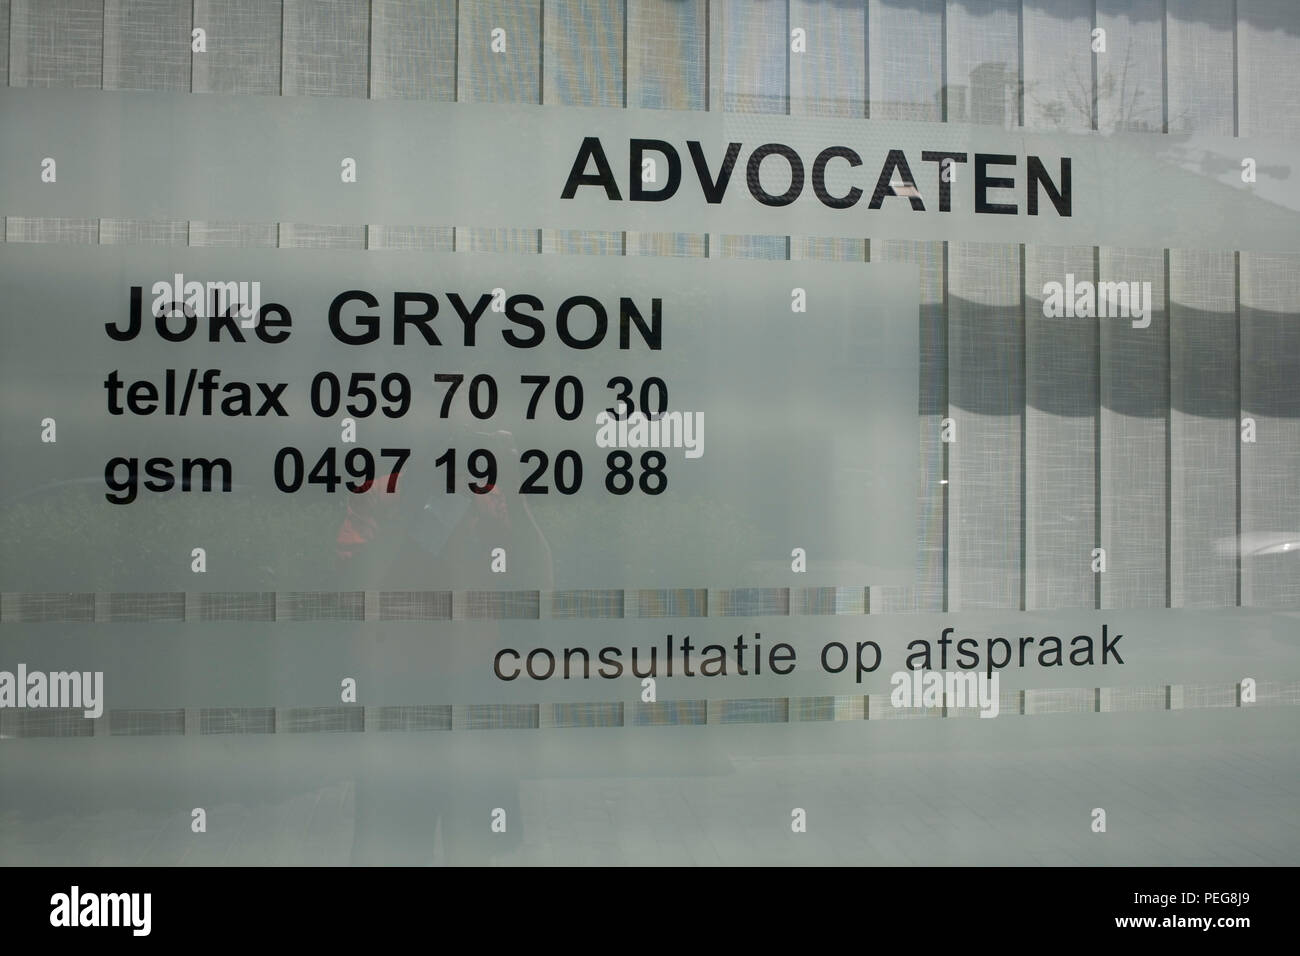 Office de Tourisme de Joke Gryson avocats dans Osatend centre-ville montrant les numéros de téléphone et offrant une consultation sur rendez-vous Banque D'Images